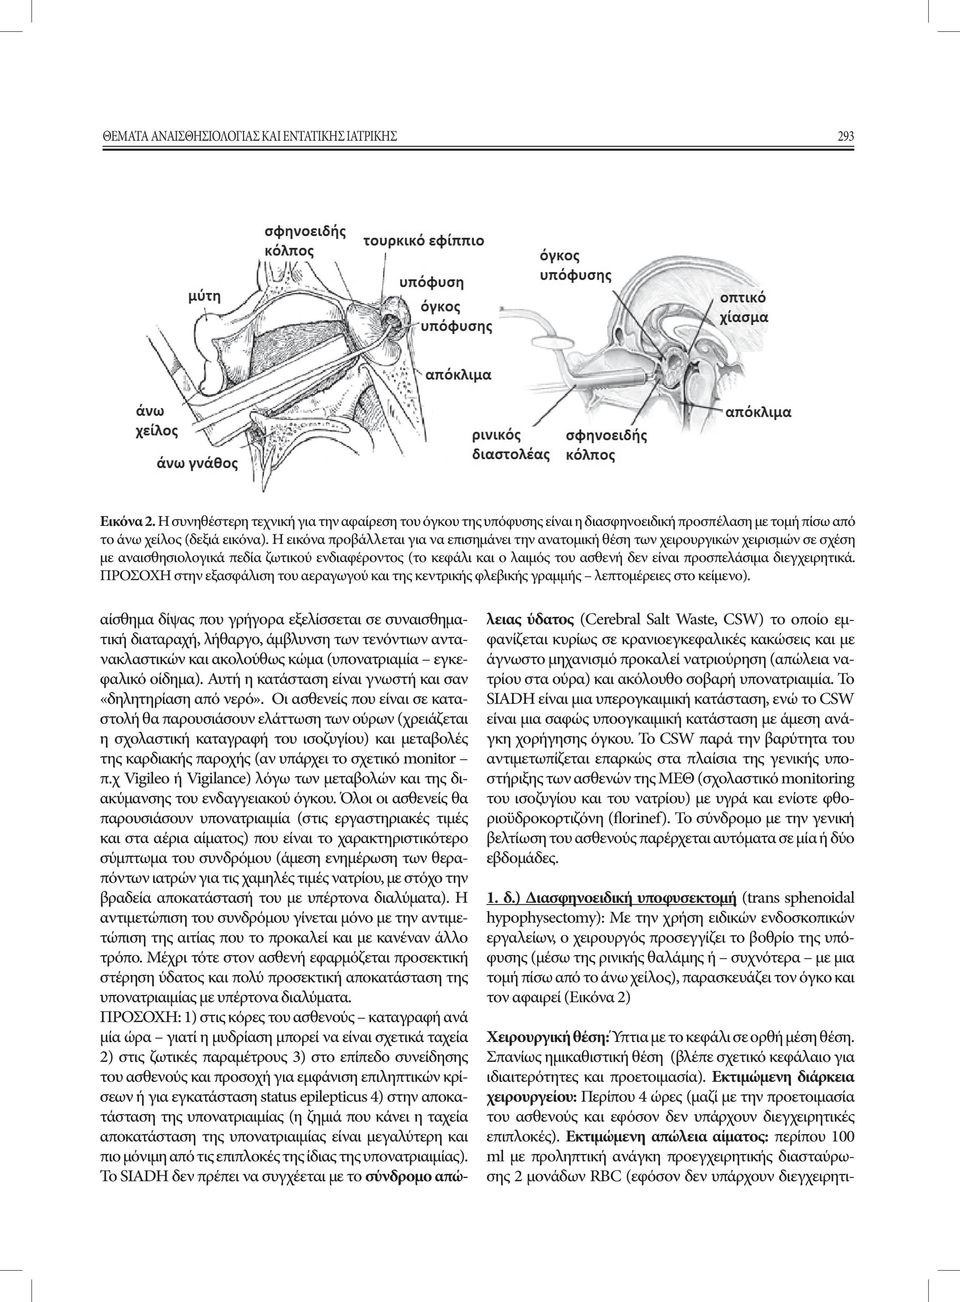 Η εικόνα προβάλλεται για να επισημάνει την ανατομική θέση των χειρουργικών χειρισμών σε σχέση με αναισθησιολογικά πεδία ζωτικού ενδιαφέροντος (το κεφάλι και ο λαιμός του ασθενή δεν είναι προσπελάσιμα